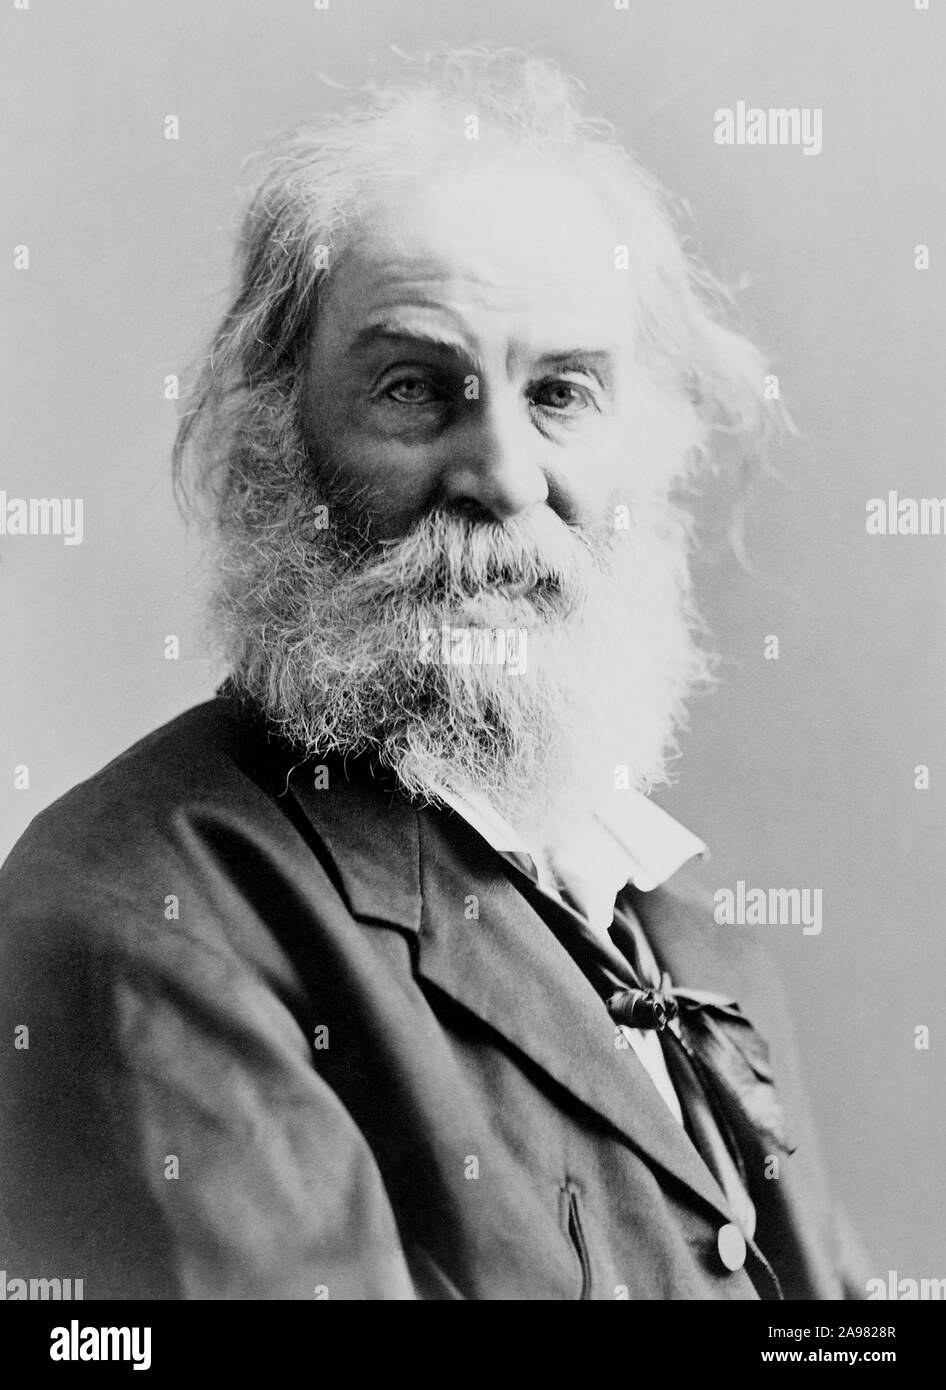 Vintage photo portrait de poète, essayiste et journaliste Walt Whitman (1819 - 1892). Photo vers 1885 par Gurney. Banque D'Images